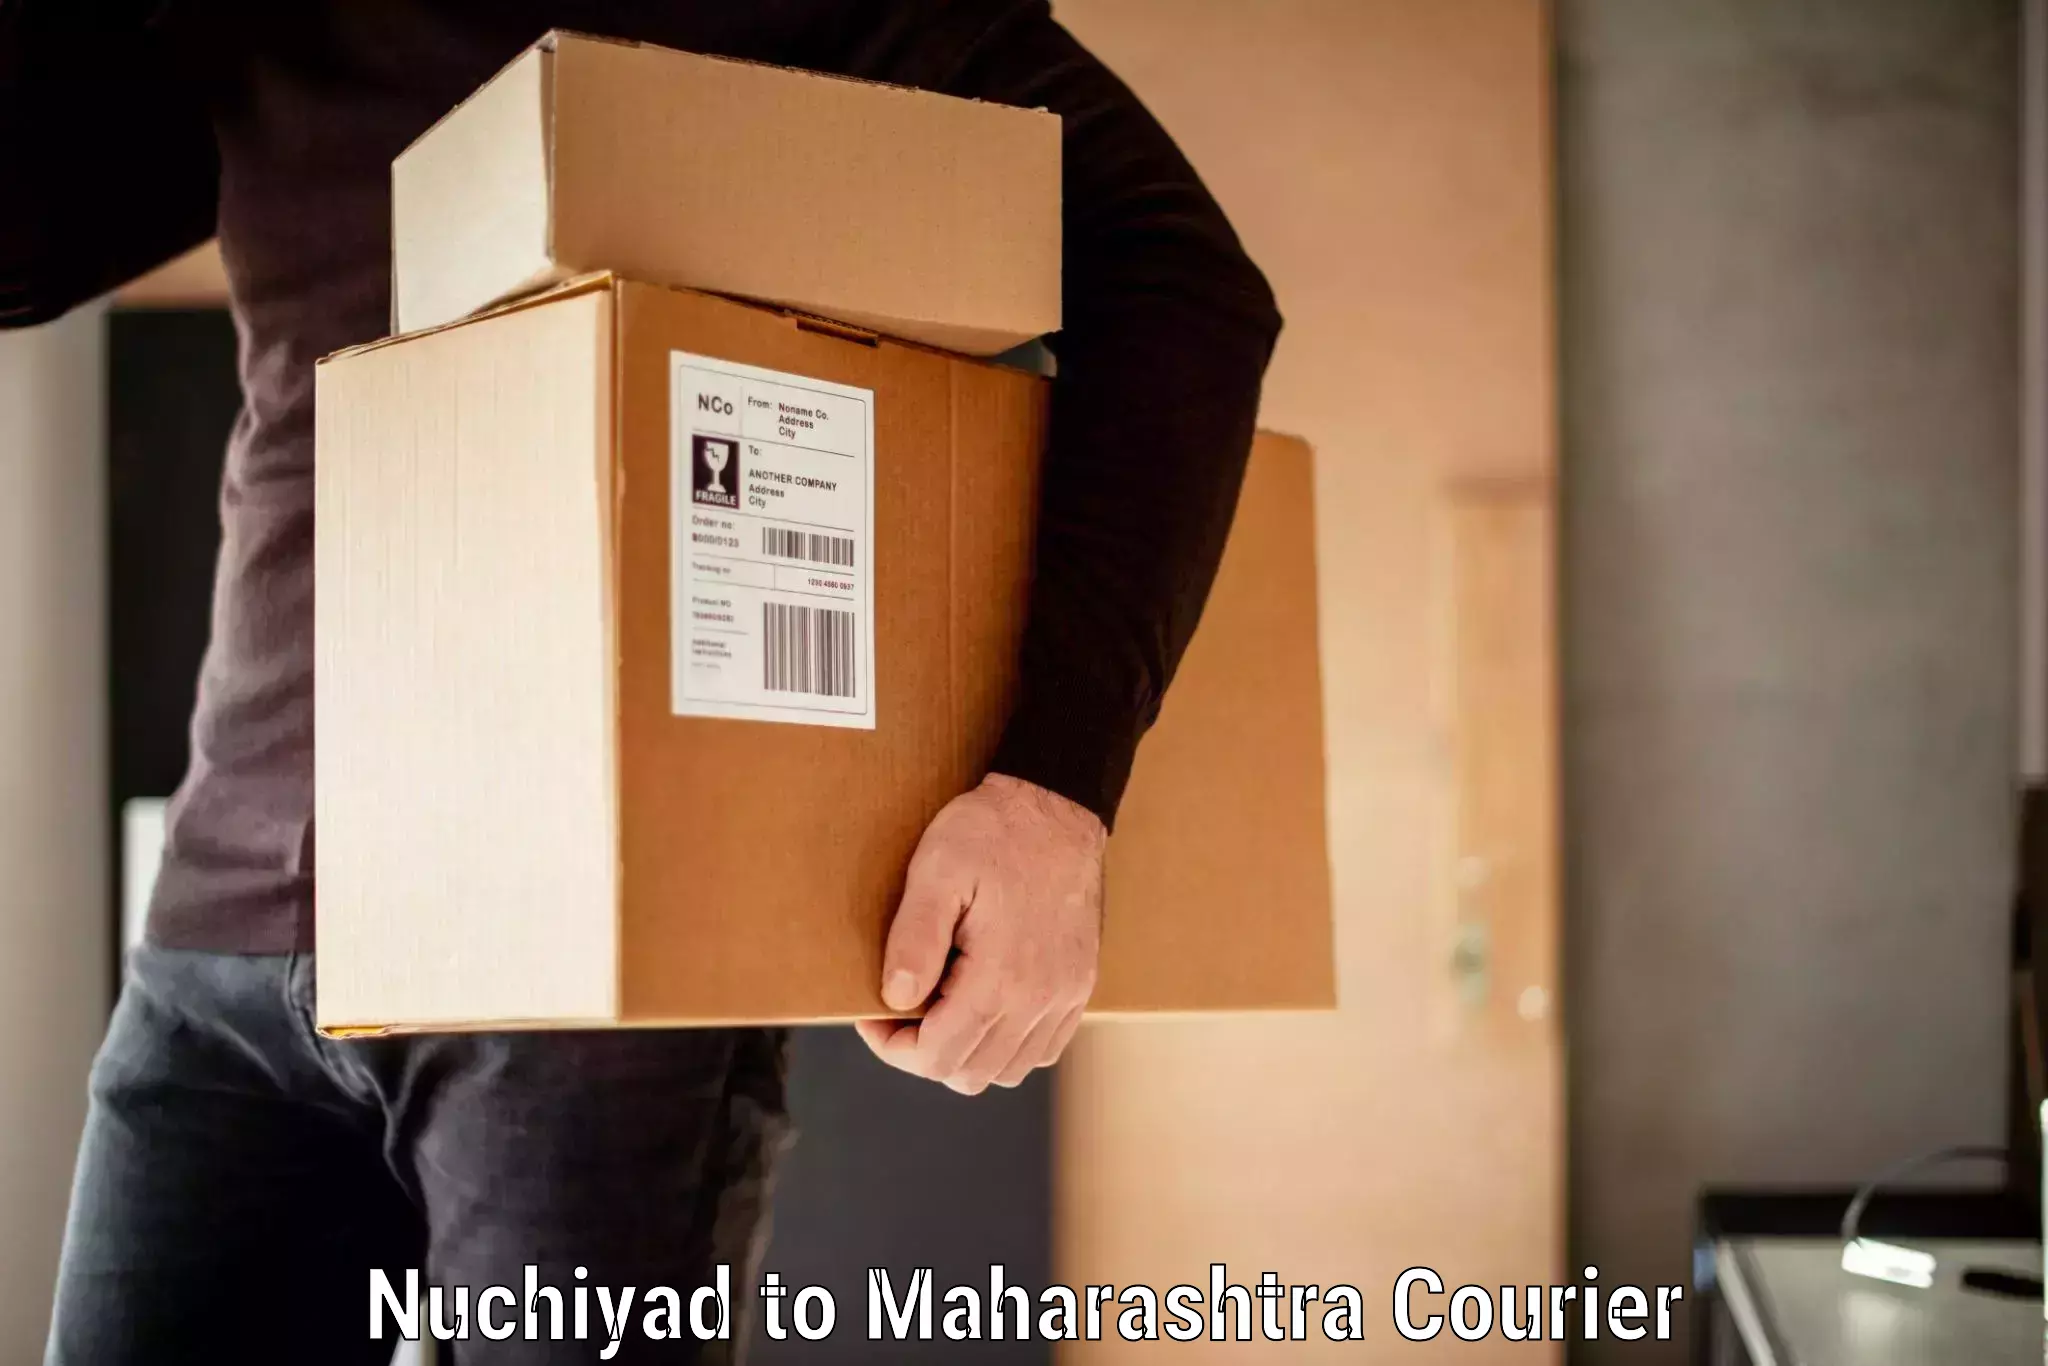 Luggage delivery app Nuchiyad to Maharashtra